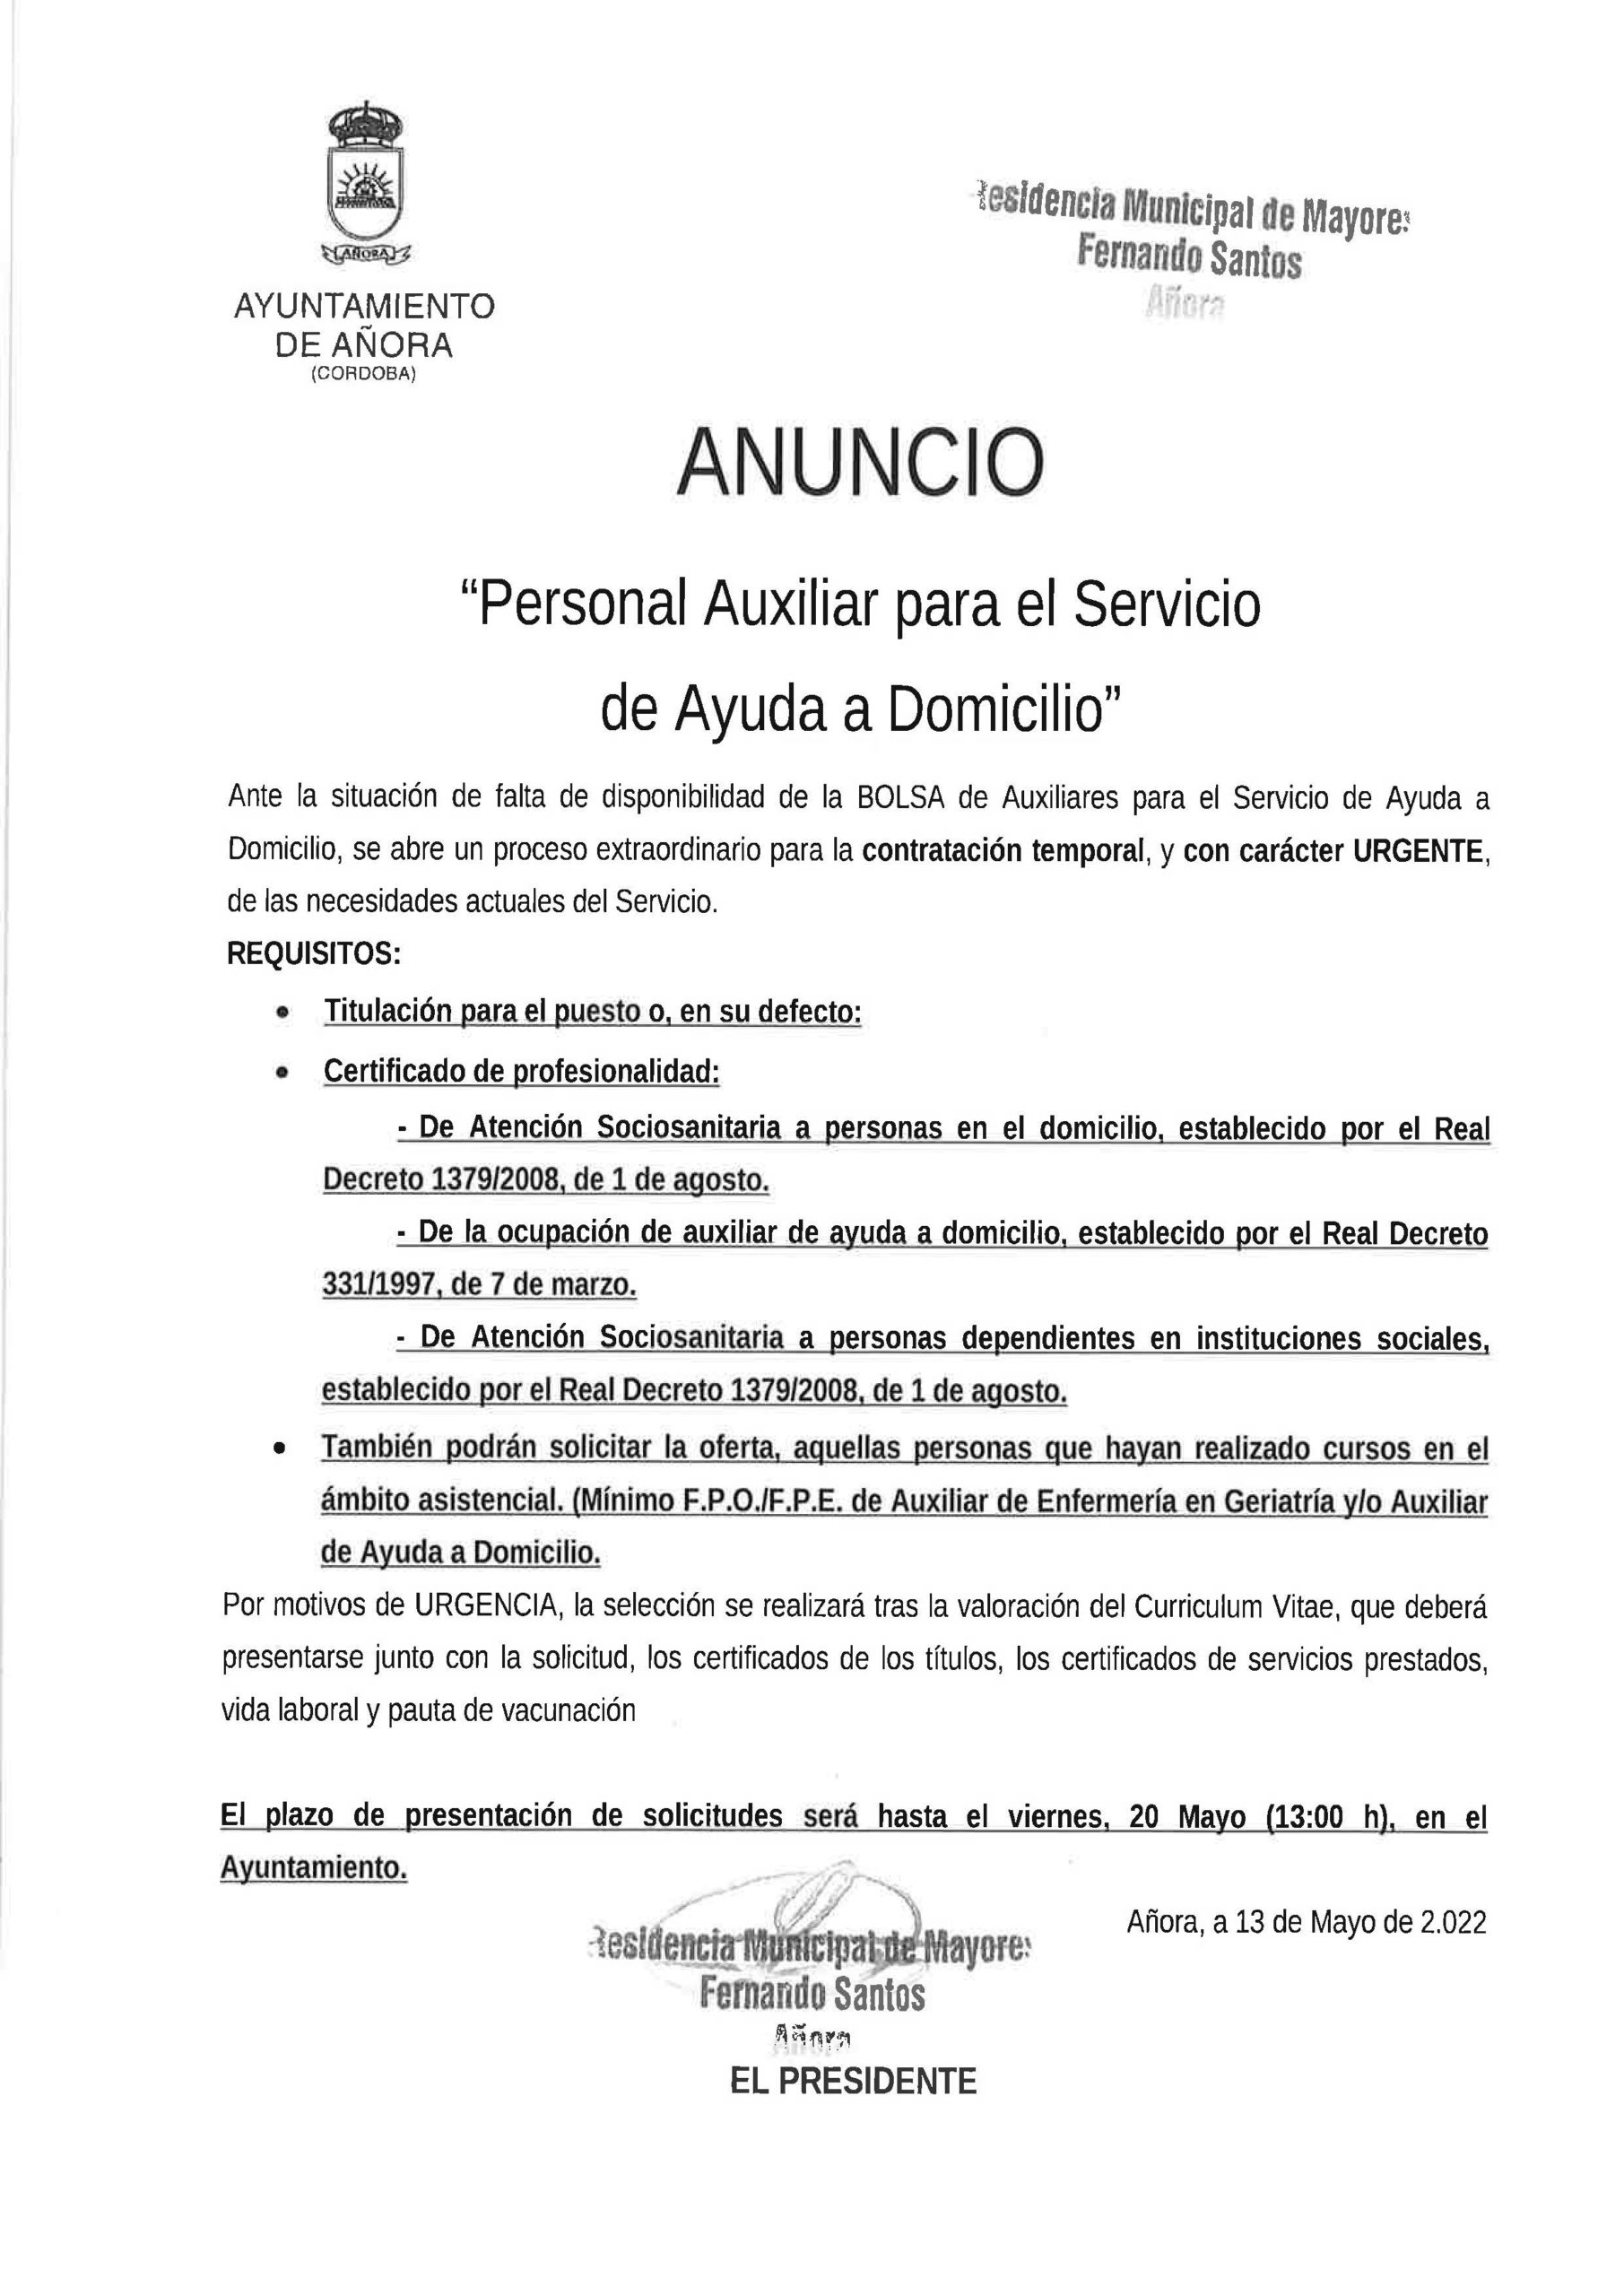 ANUNCIO PERSONAL AUXILIAR PARA EL SERVICIO DE AYUDA A DOMICILIO